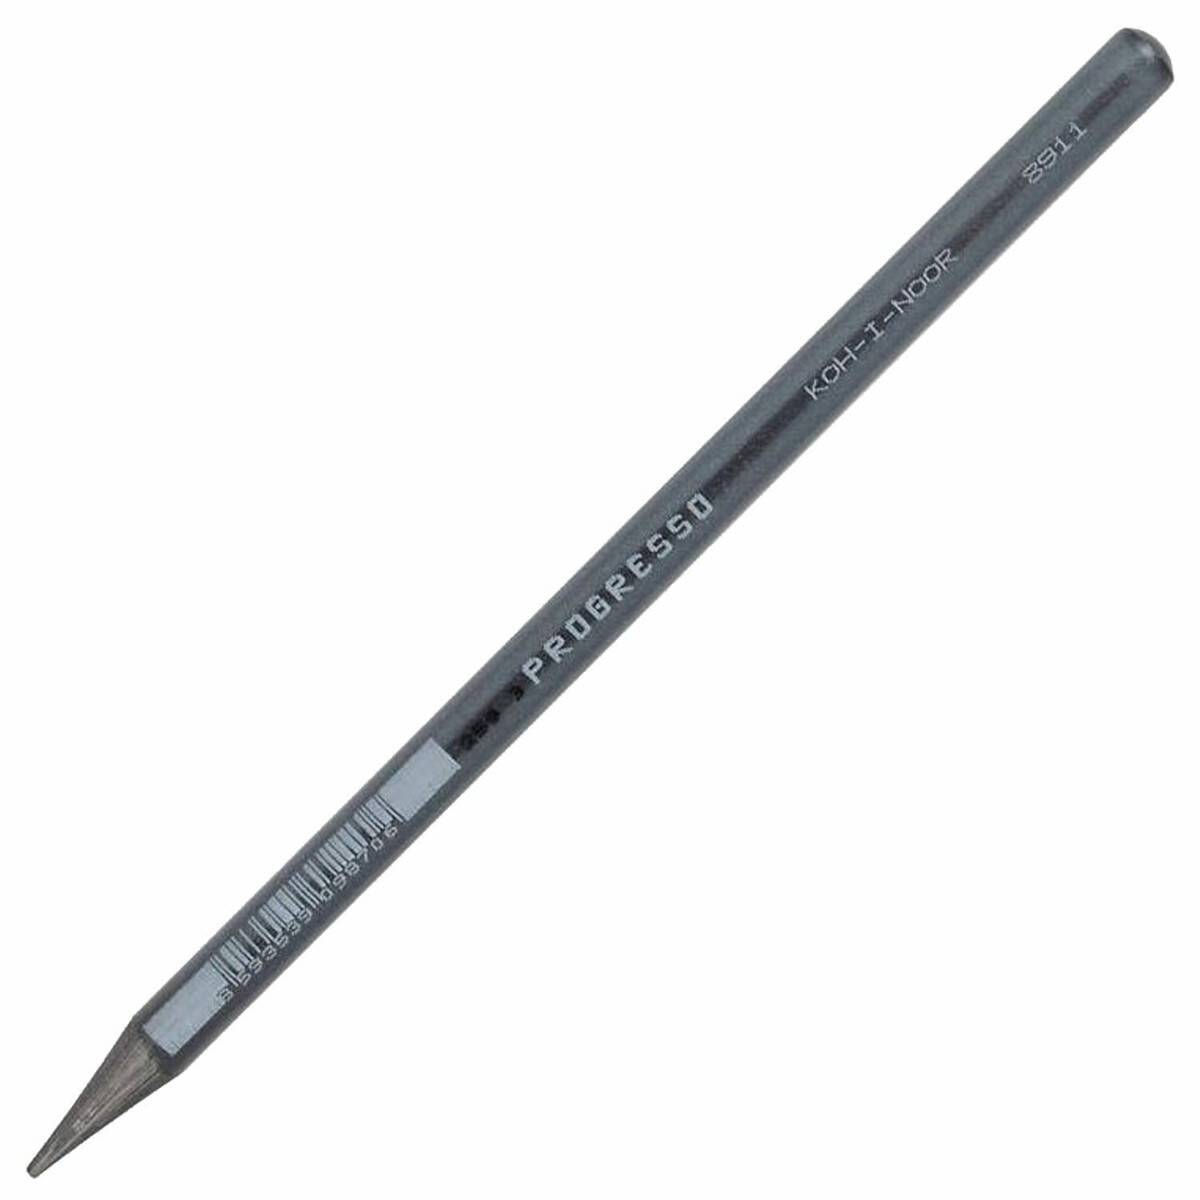 Ołówek Bezdrzewny 4B PROGRESSO 8911/4B.